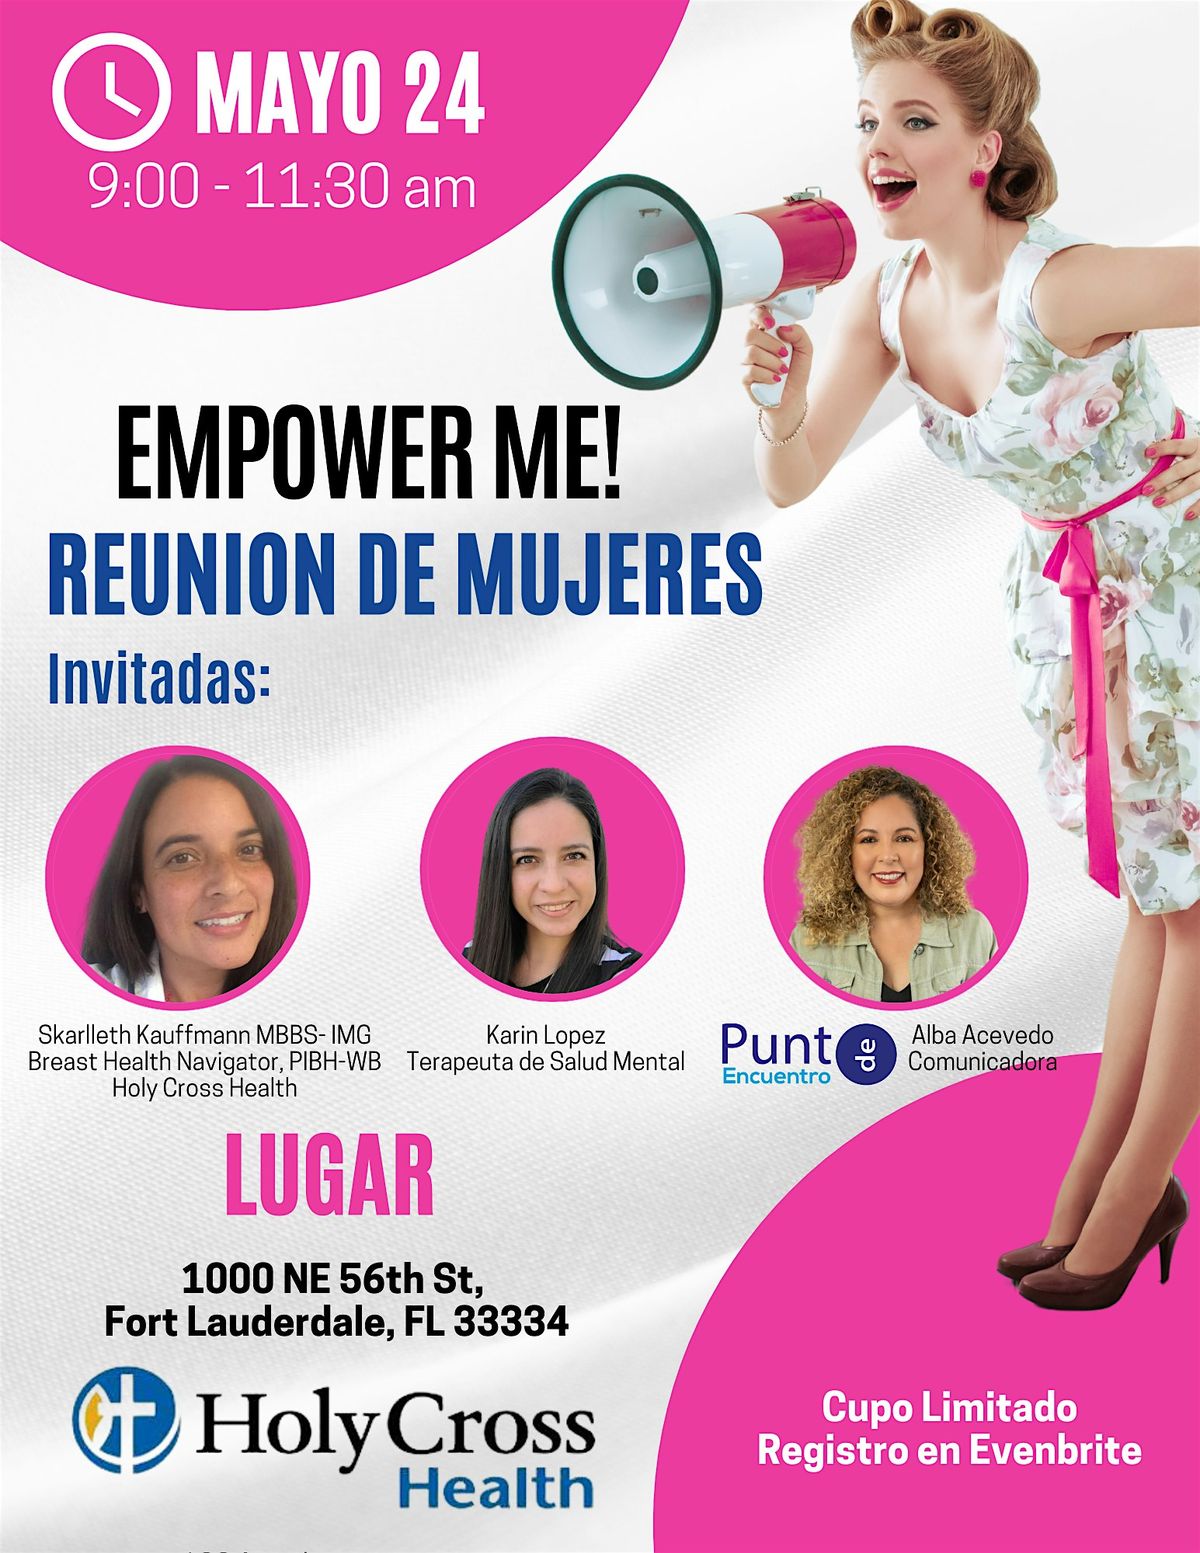 Empower Me! Reunion de Mujeres.